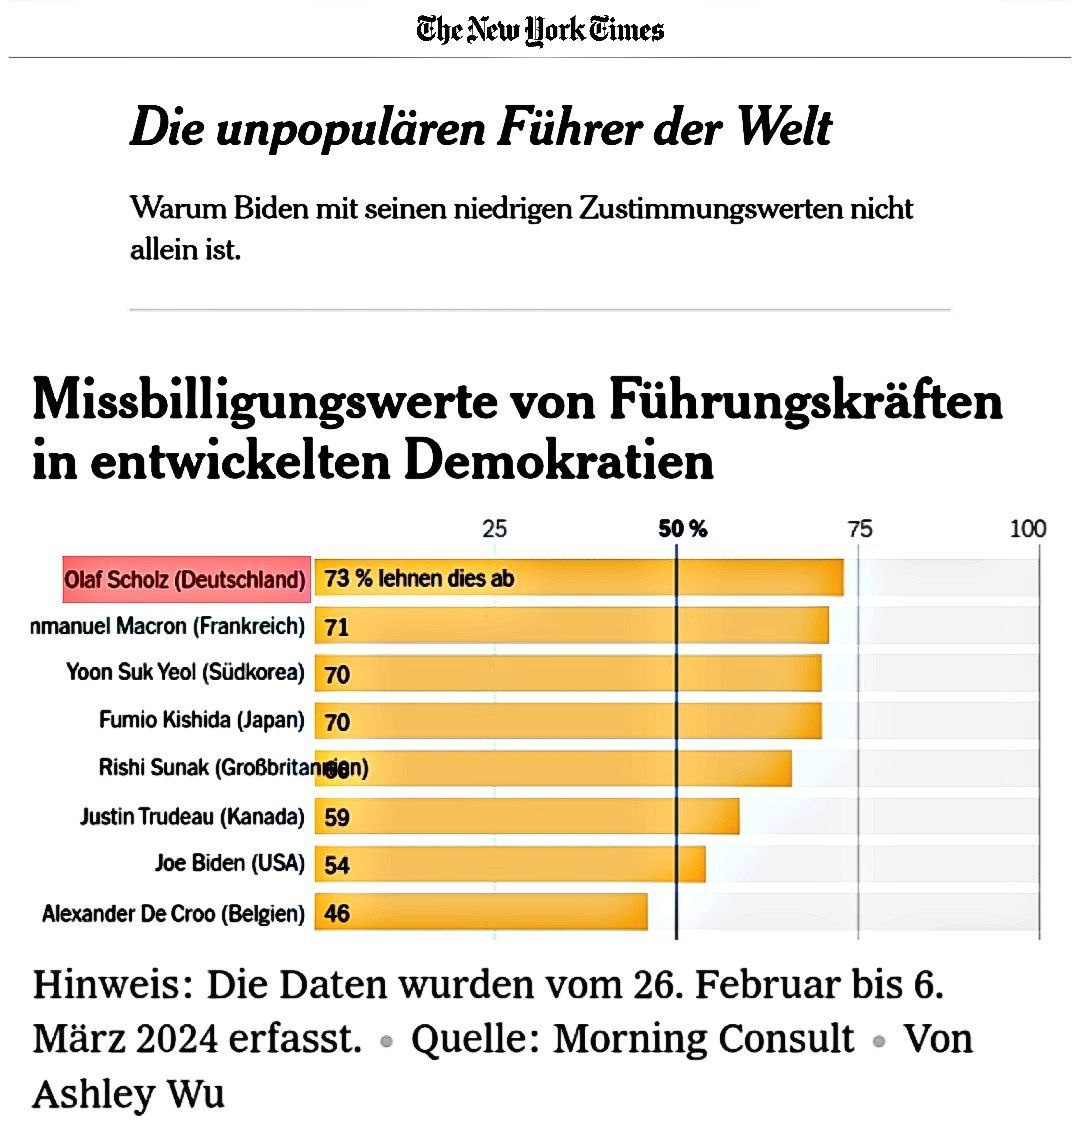 🗞🇩🇪 #OlafScholz ist offiziell der unbeliebteste Führer der Welt

Die renommierte #NewYorkTimes veröffentlicht eine Statistik der unbeliebtesten Führungskräfte in entwickelten Demokratien, bei der Olaf Scholz auf der Spitze steht mit 73% die ihn ablehnen.